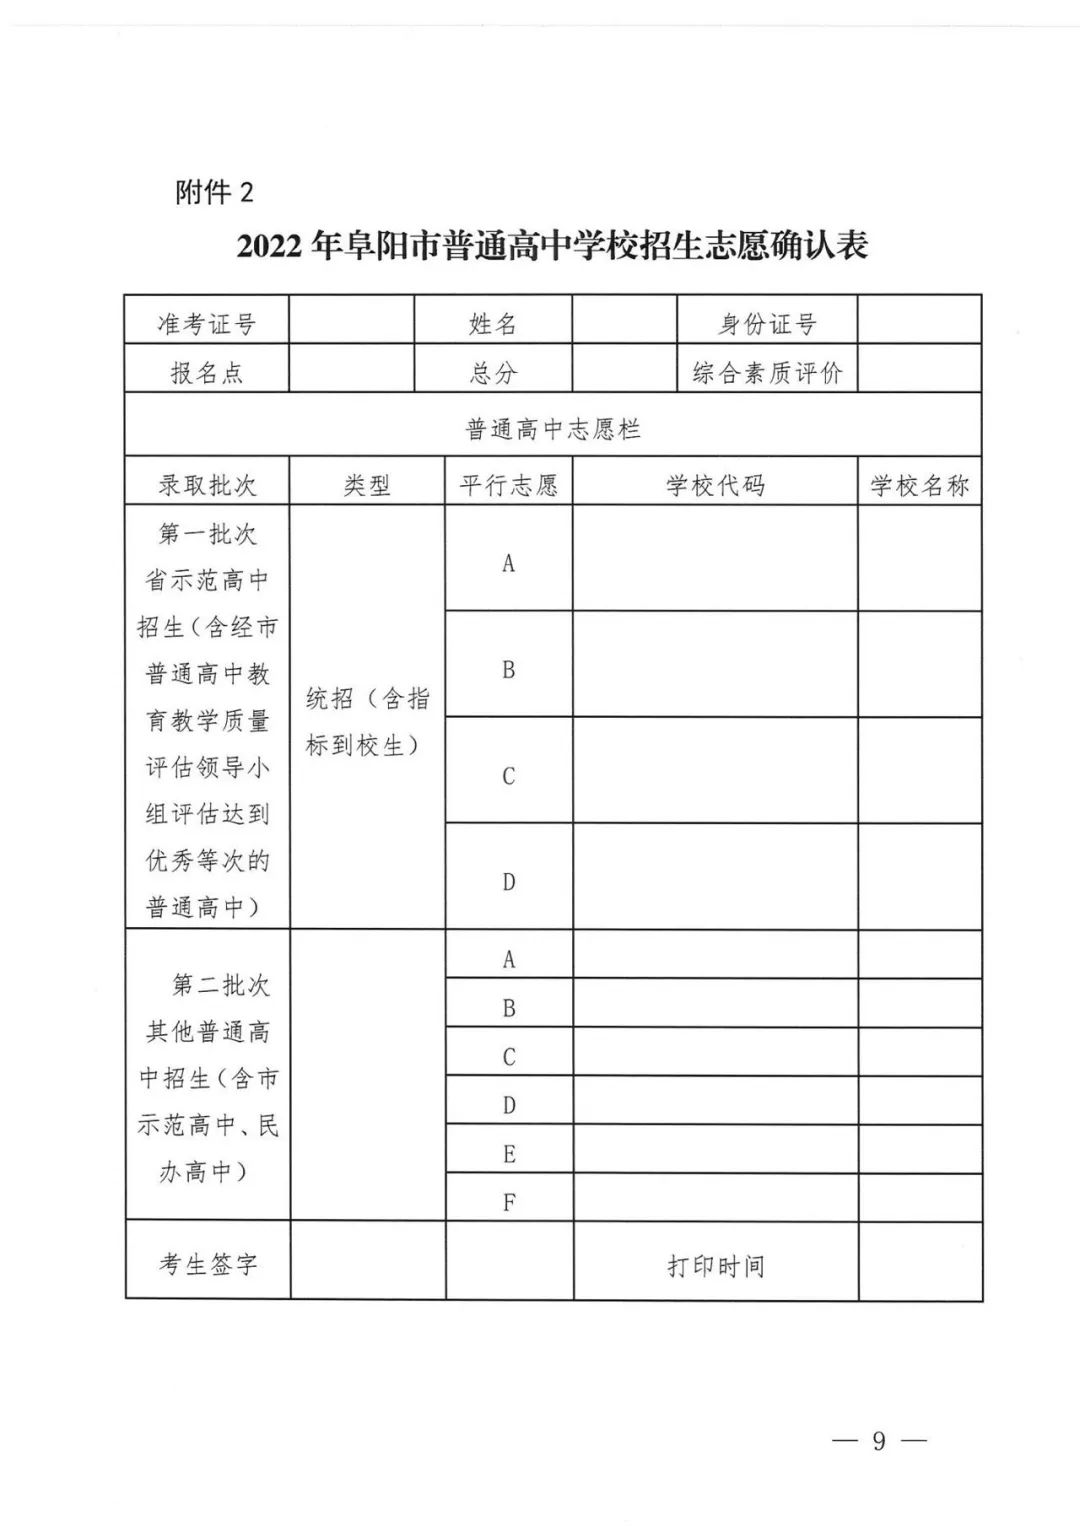 2019年吉林省长春市中考高中学校第二批次征集志愿录取分数线